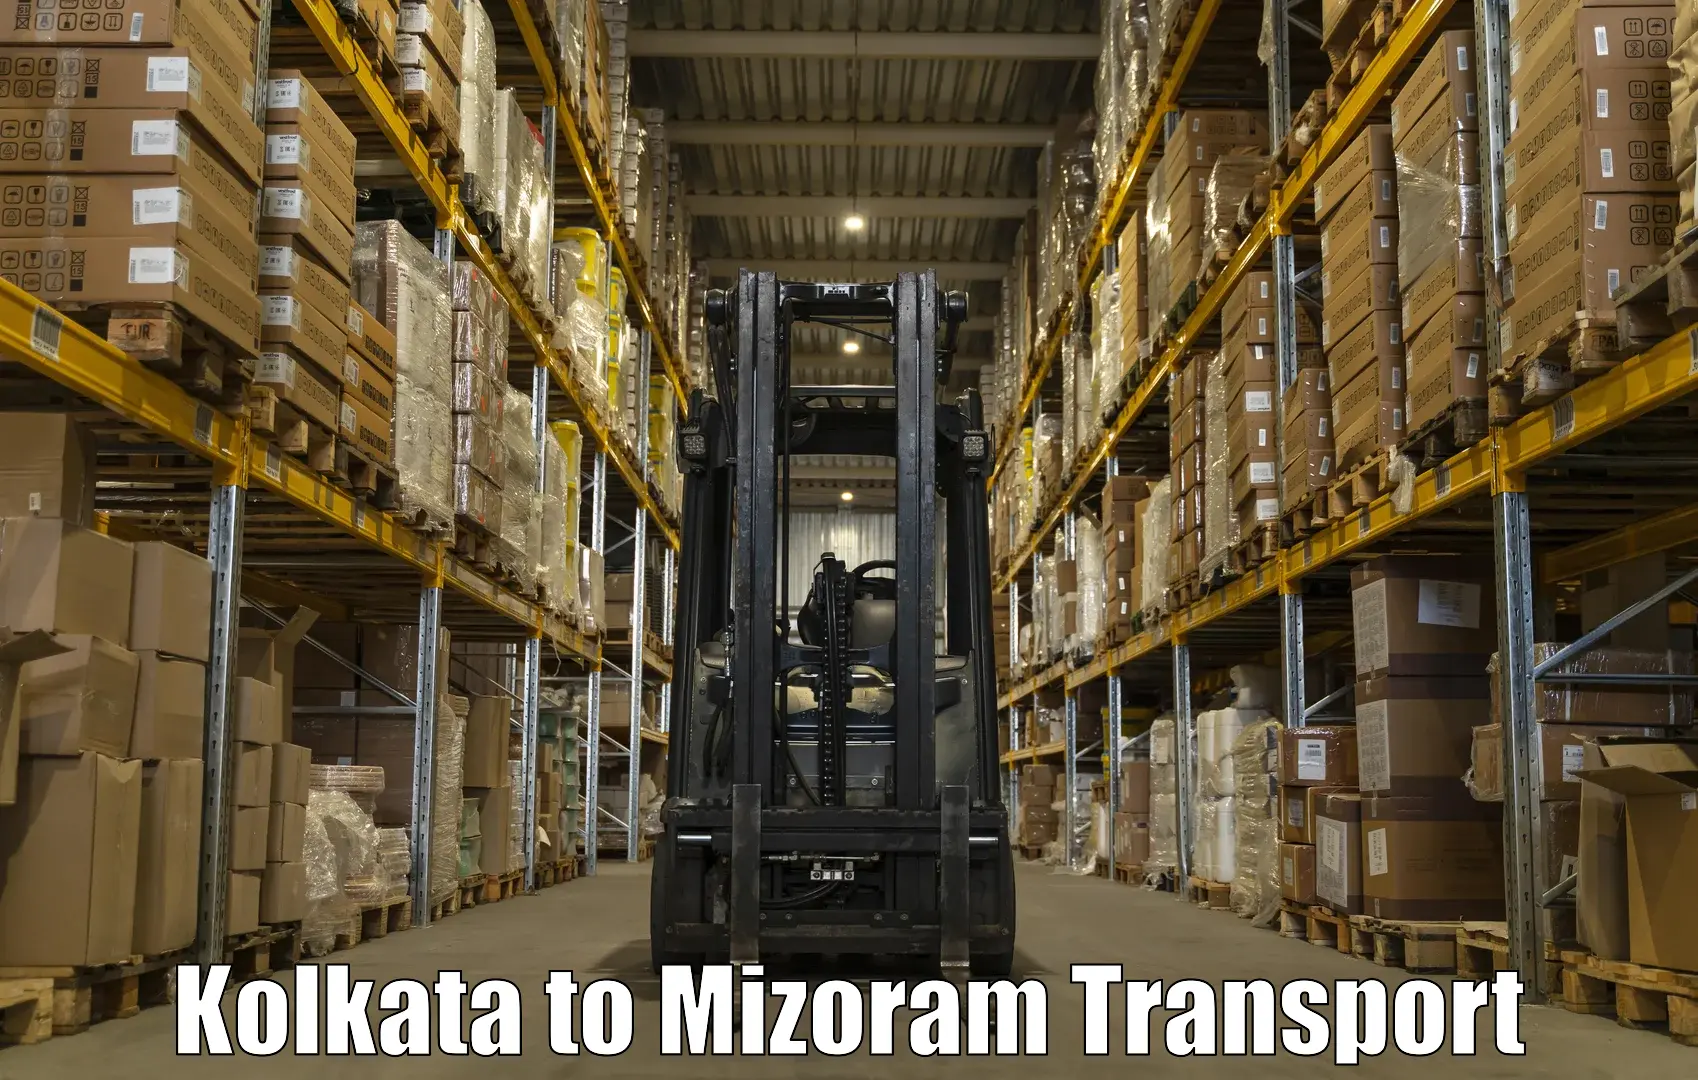 Online transport booking Kolkata to Thenzawl